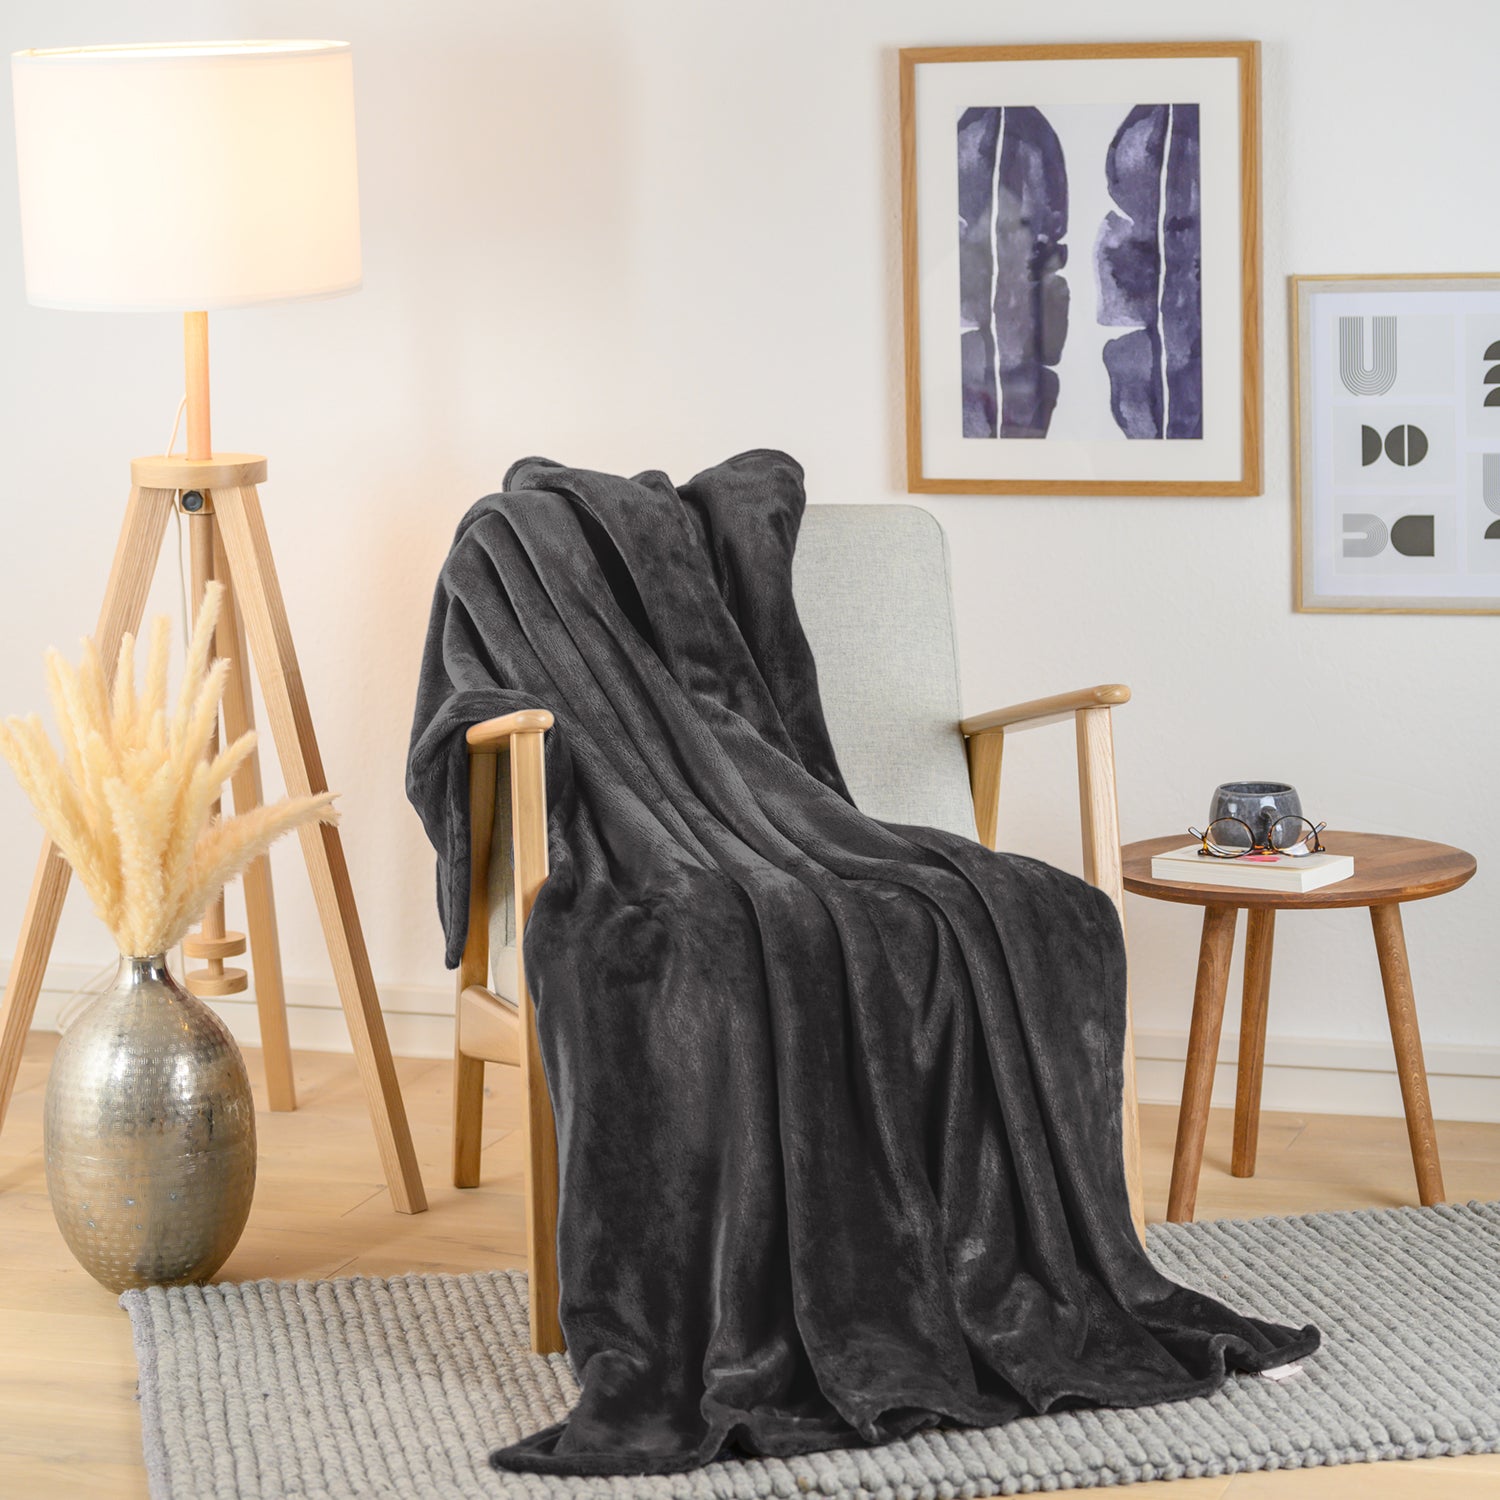 Schwarze Fleecedecke über einen Sessel in einem stilvoll eingerichteten Wohnzimmer geworfen, mit dekorativer Vase und Bild im Hintergrund.